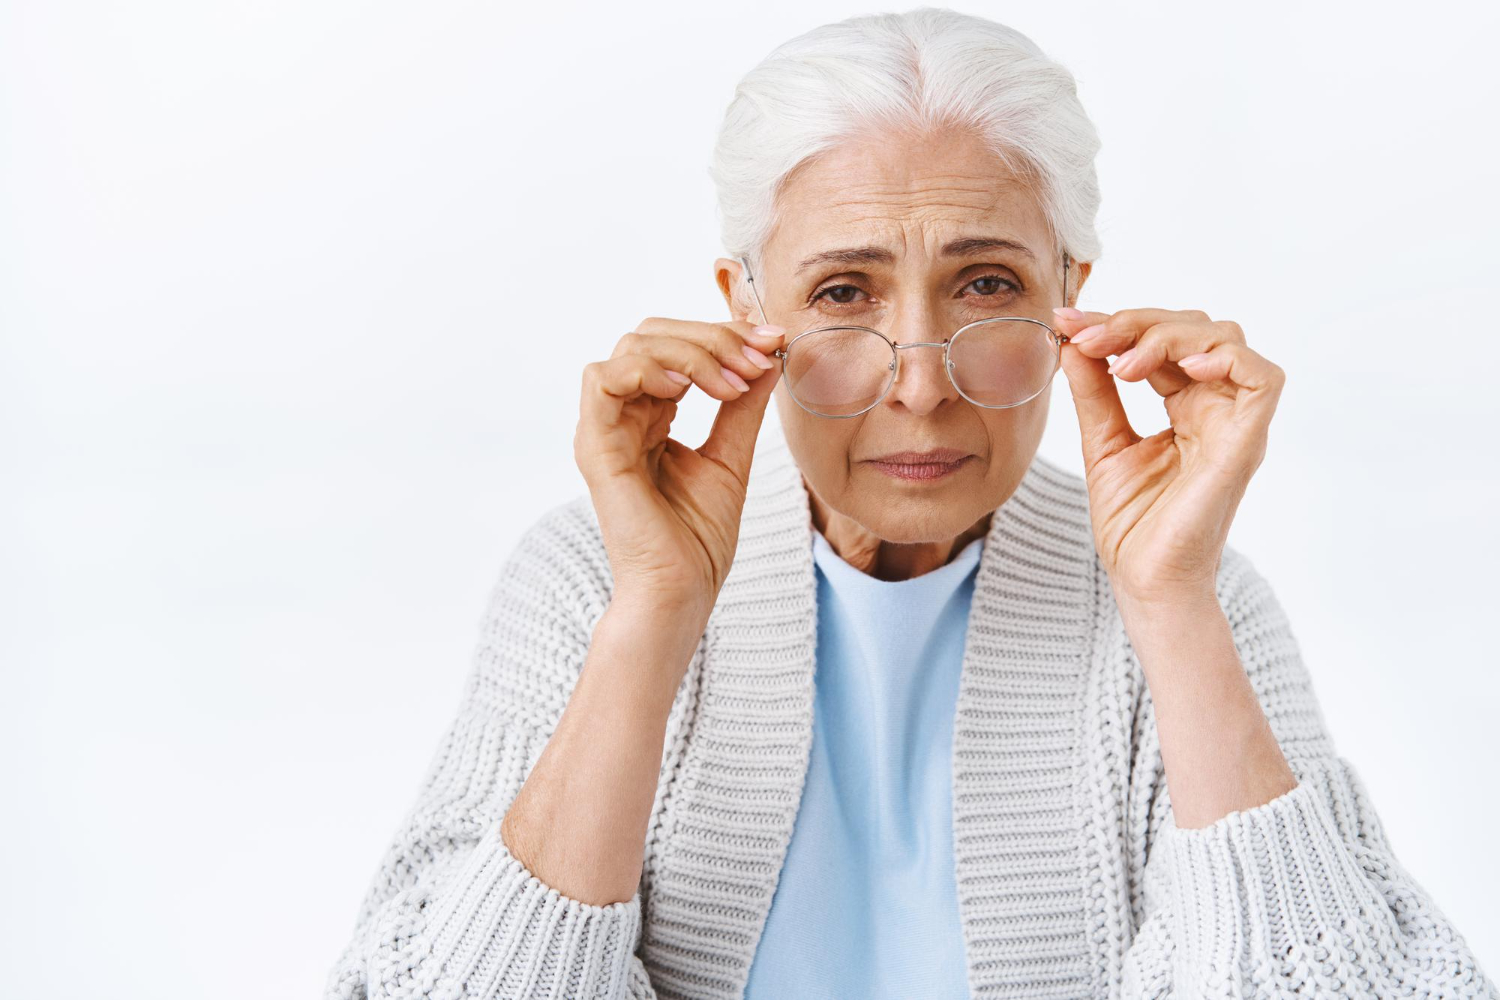 ตาต้อกระจกในผู้สูงอายุแตกต่างอย่างไร